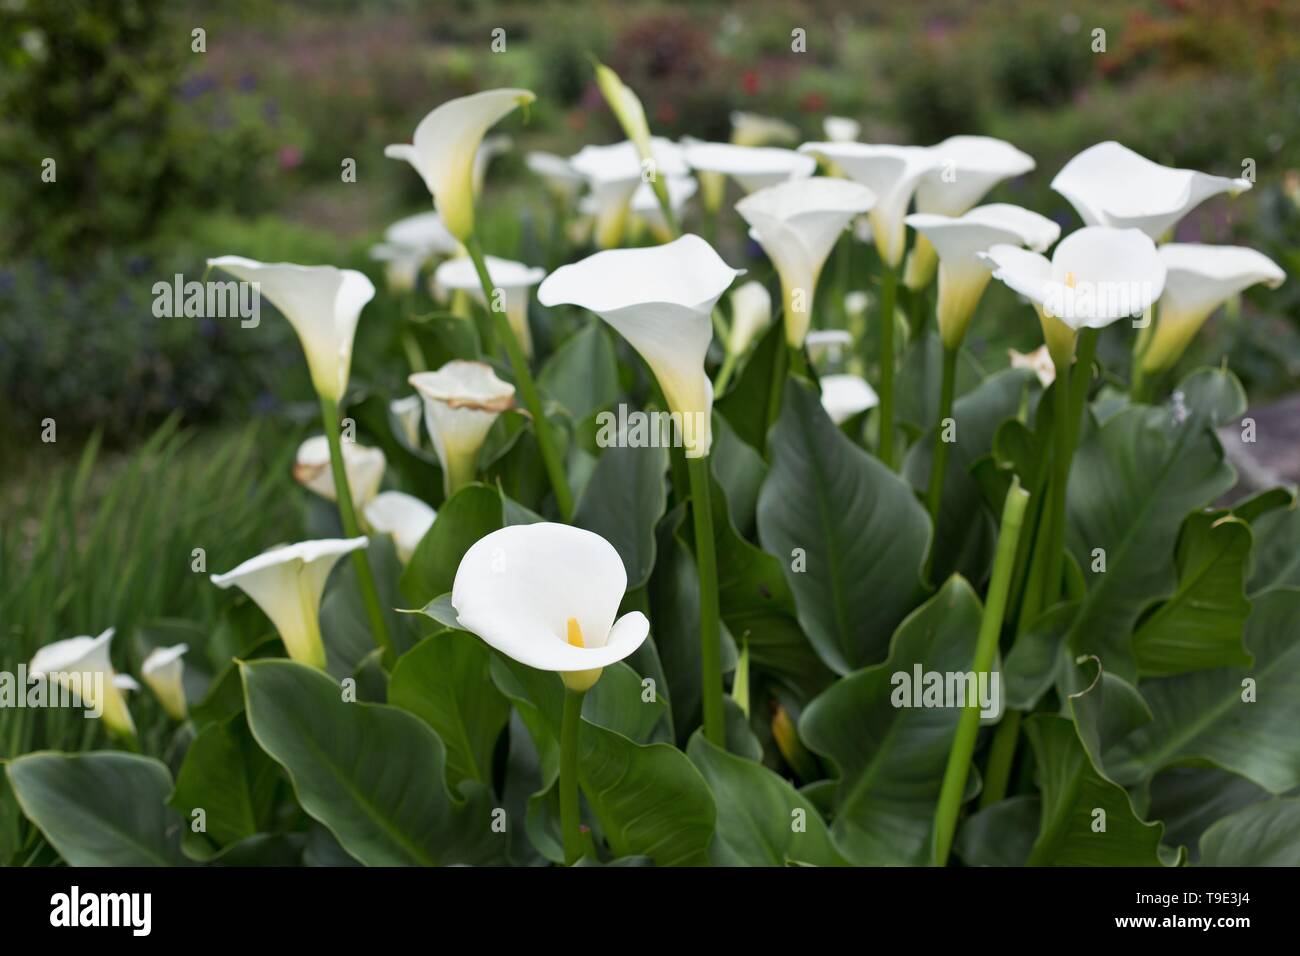 Calla lilies - Zantedeschia aethiopica - at the Owen Rose Garden in Eugene, Oregon, USA. Stock Photo